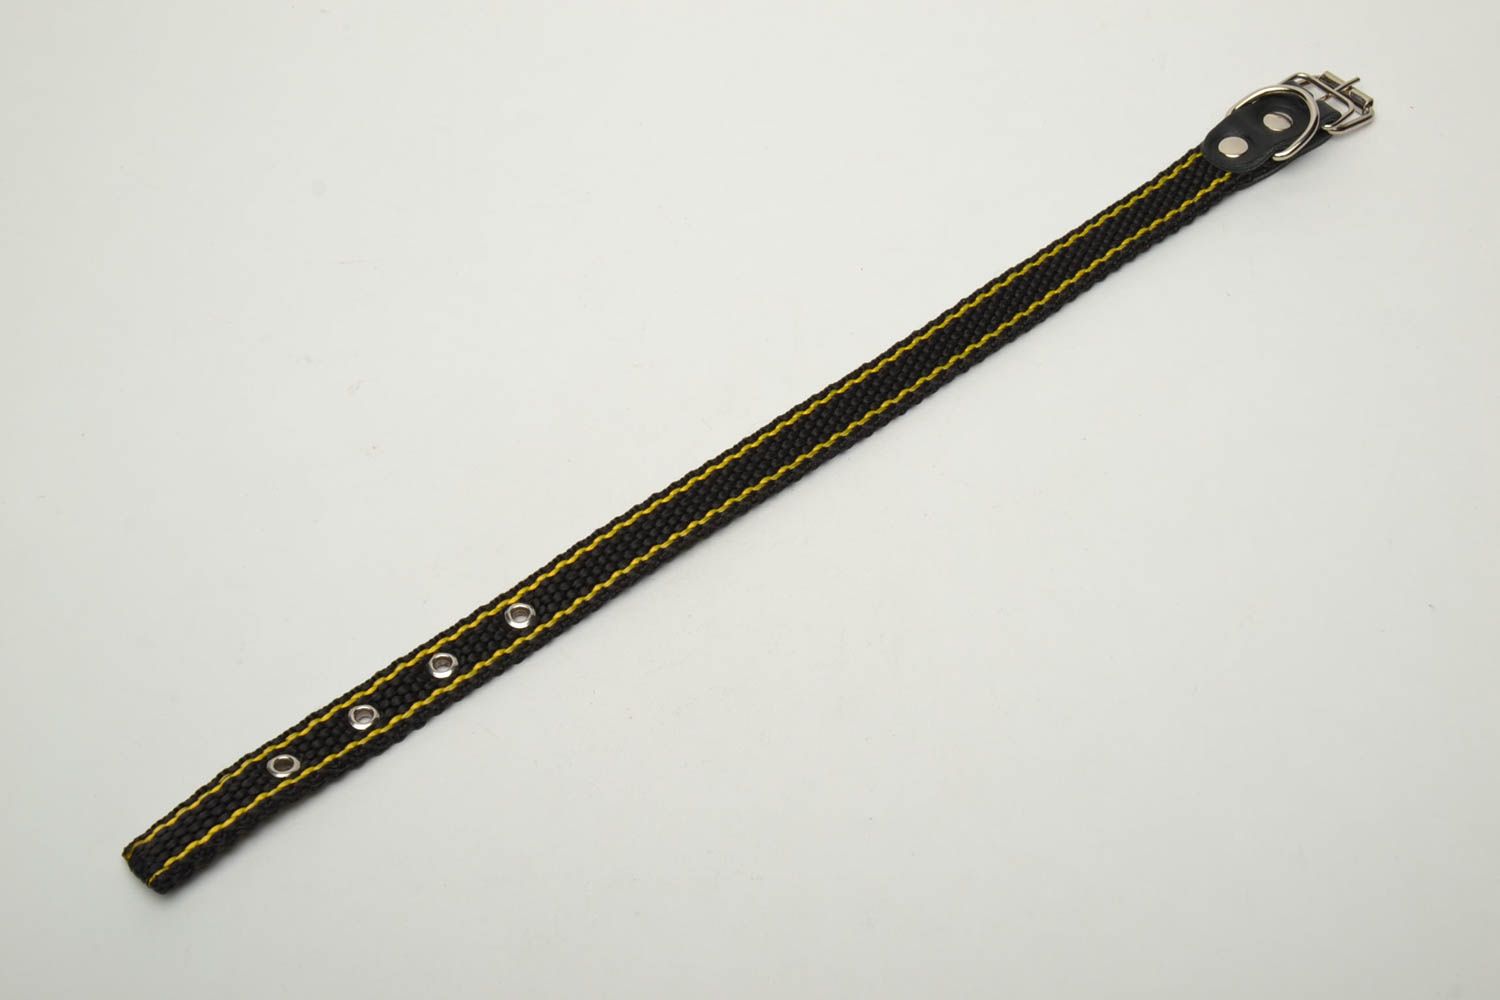 Textil Halsband für Hund in Schwarz foto 4